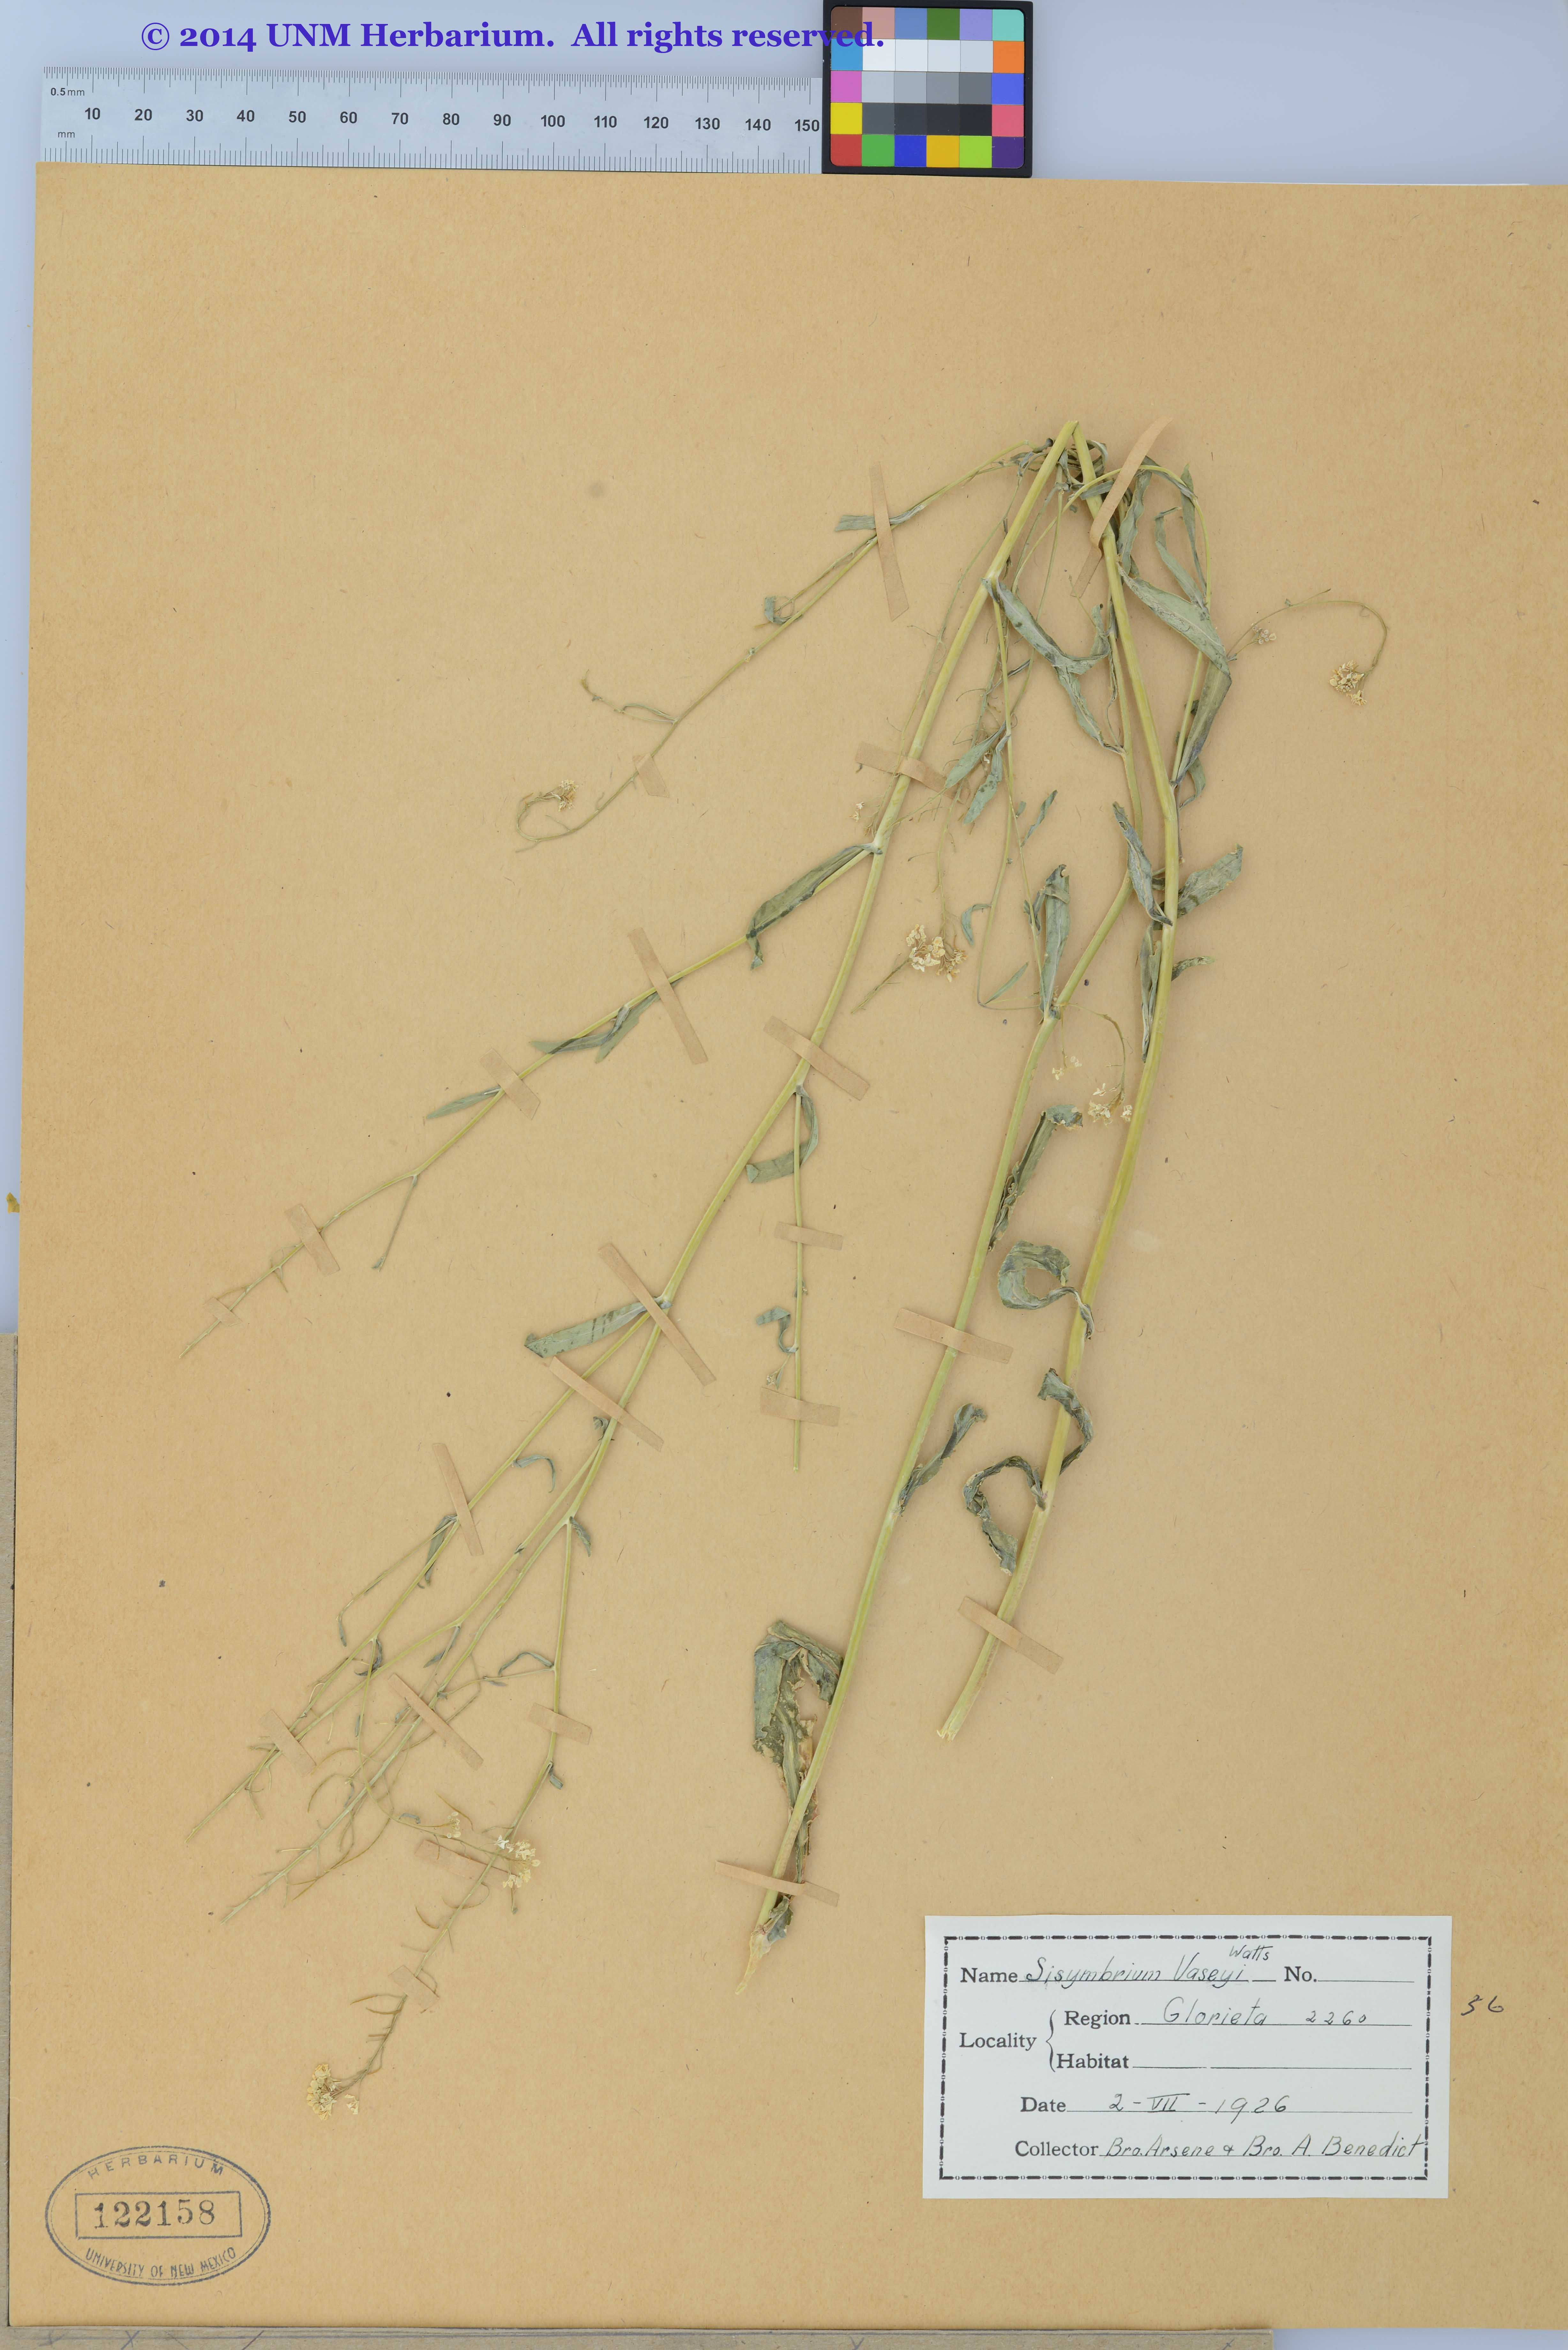 Thelypodiopsis vaseyi image